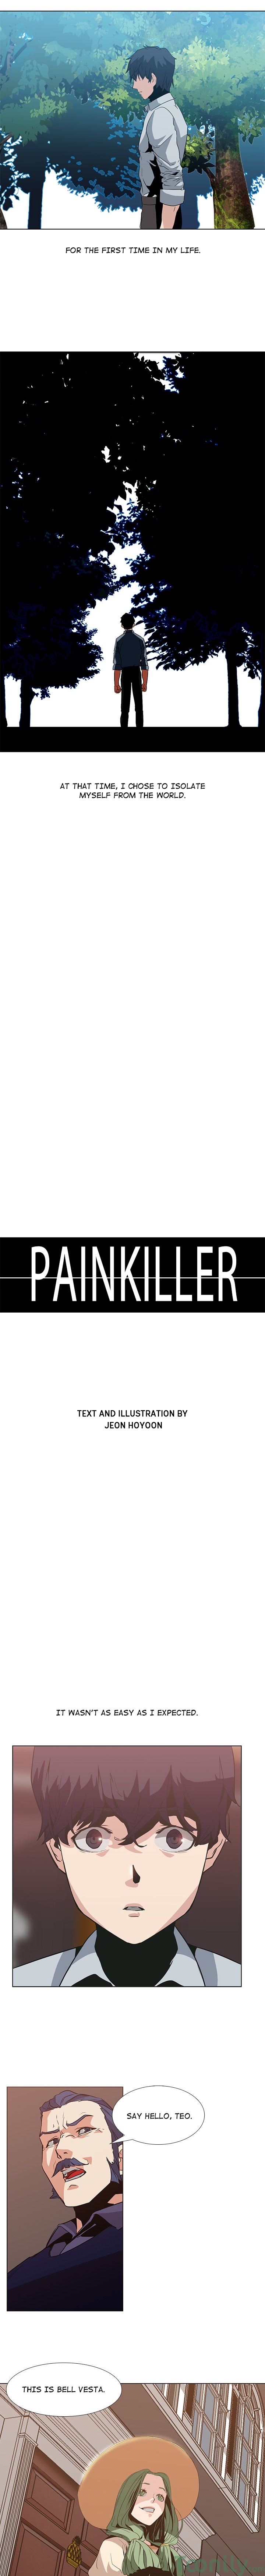 PAINKILLER image